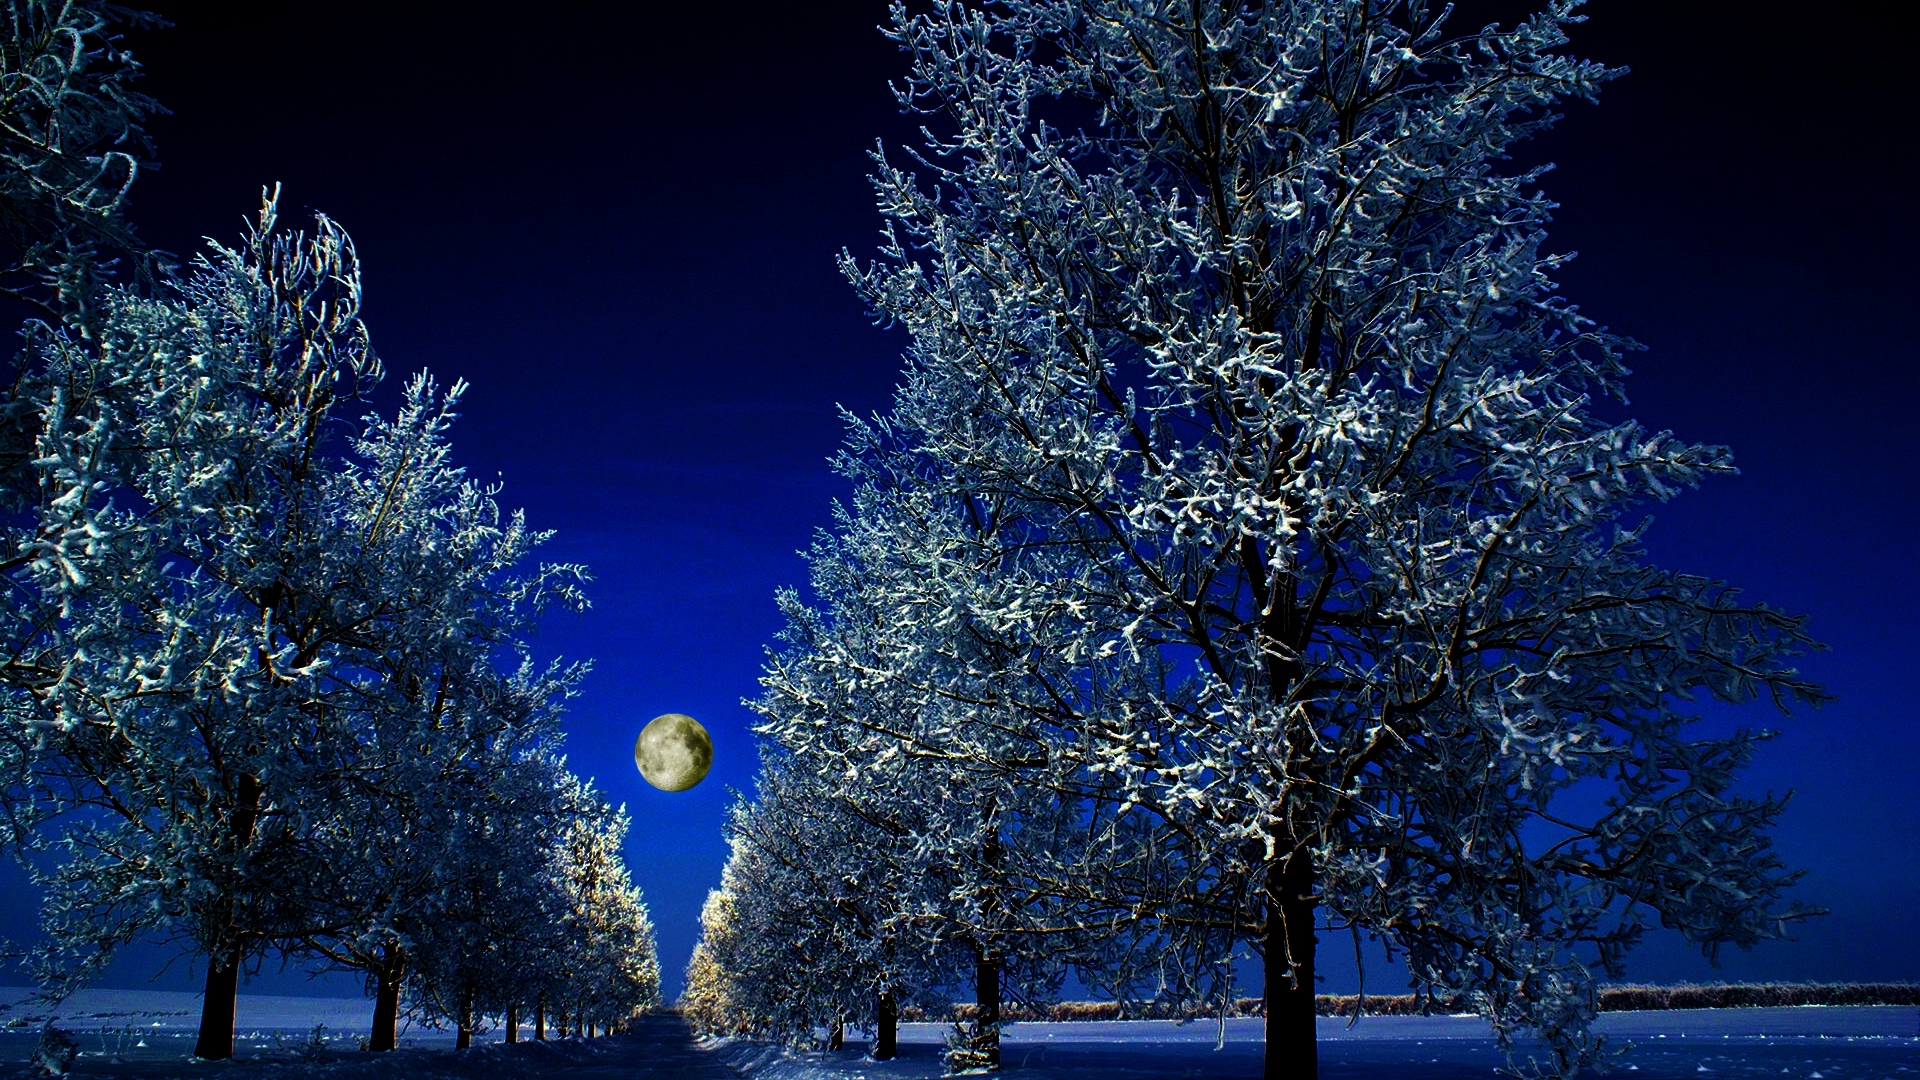 Скачать картинку Зима, Ночь, Луна, Дерево, Синий, Земля/природа, Обсаженный Деревьями в телефон бесплатно.